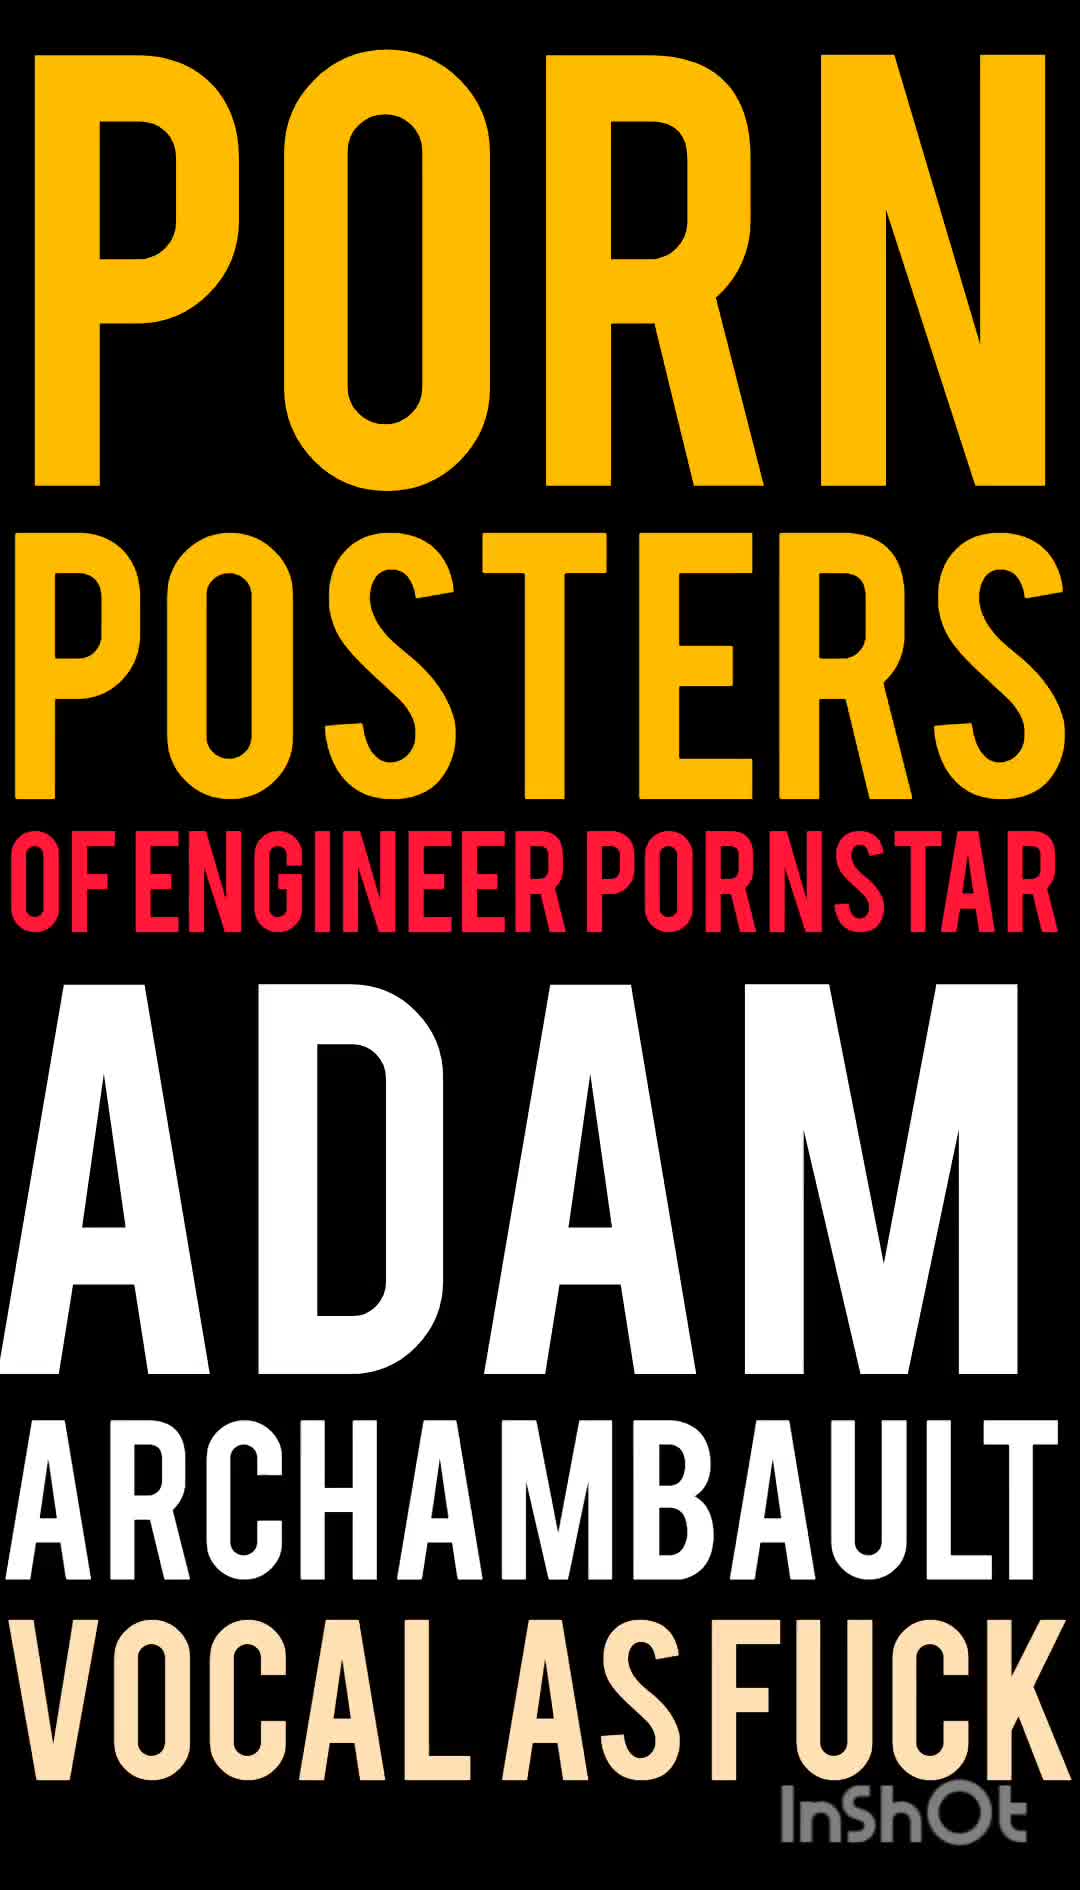 الملصقات الإباحية للمهندس الاباحية آدم أرشامبولت (صوت اللعنة)